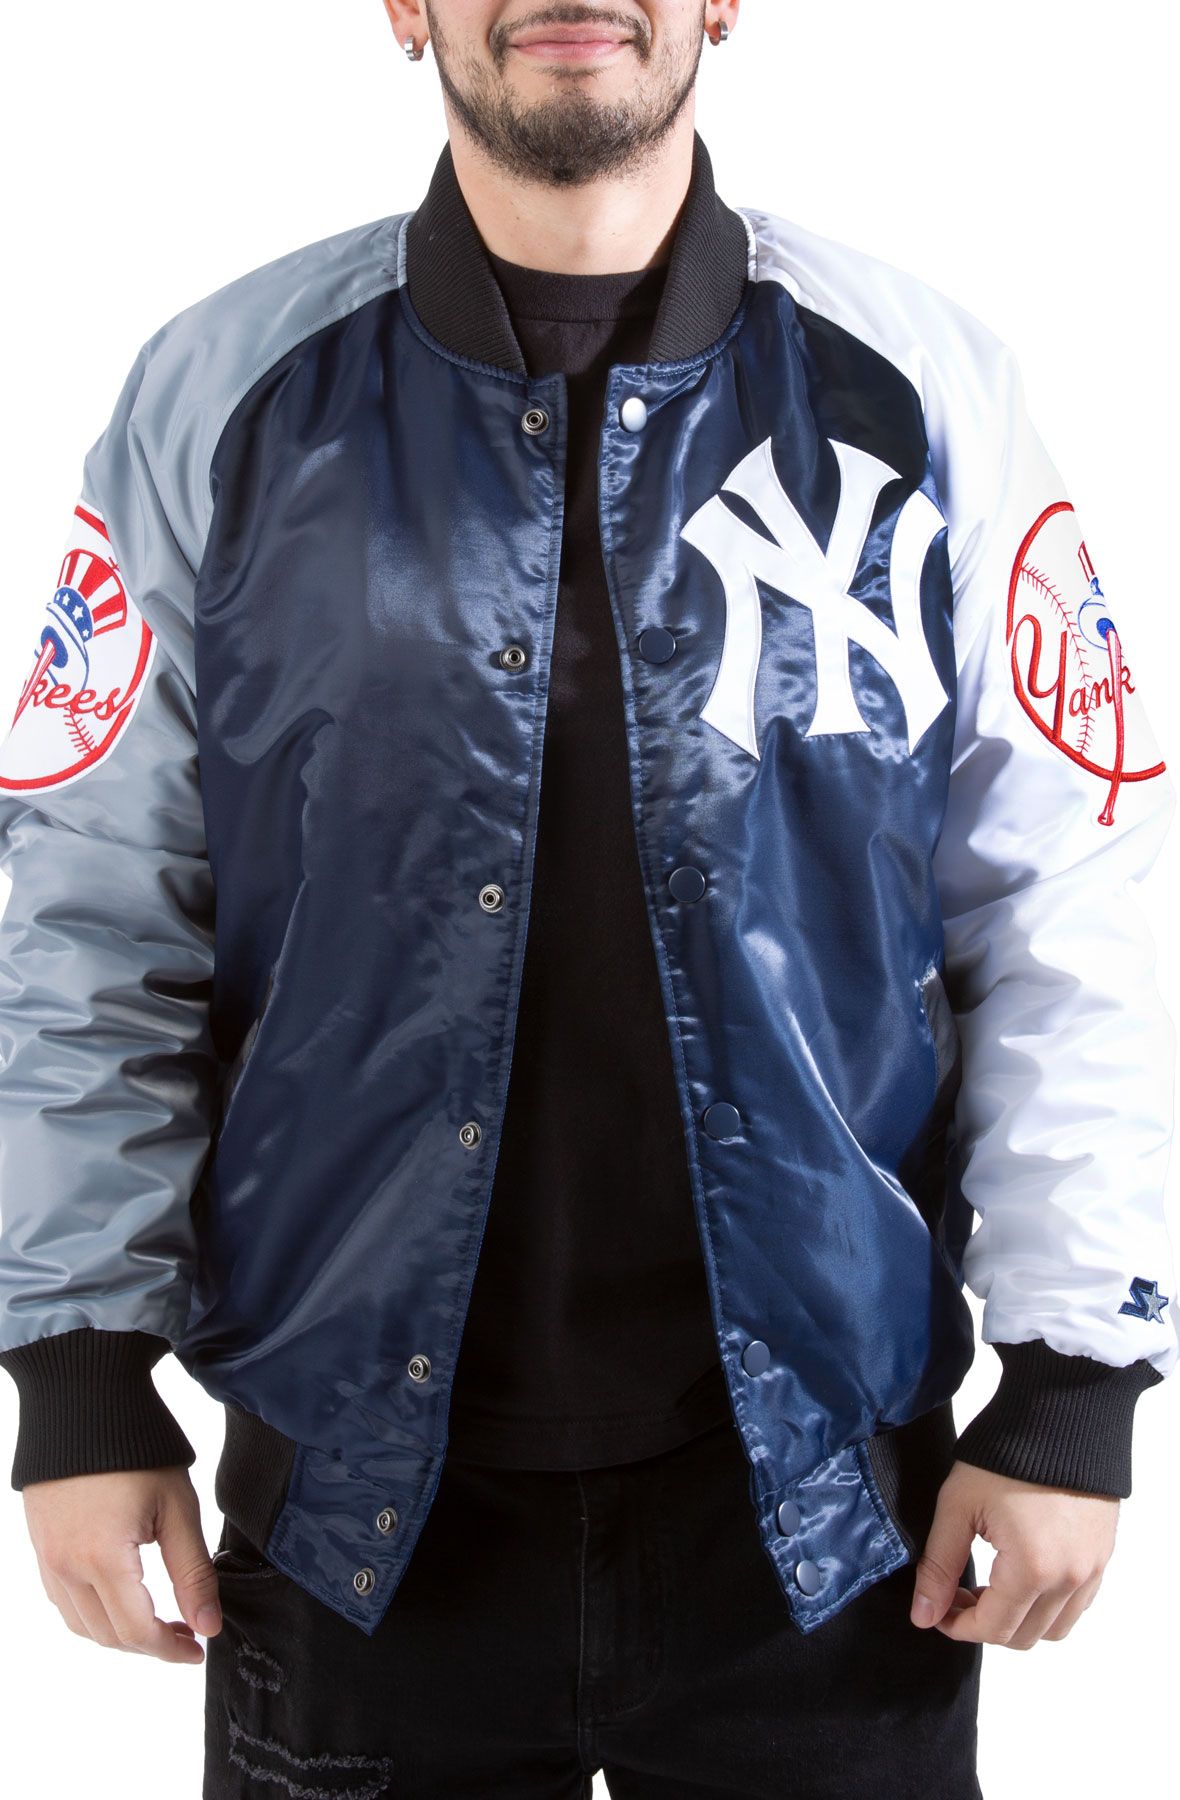 Jackets New Era New York Yankees Mlb Large Logo Varsity Jacket